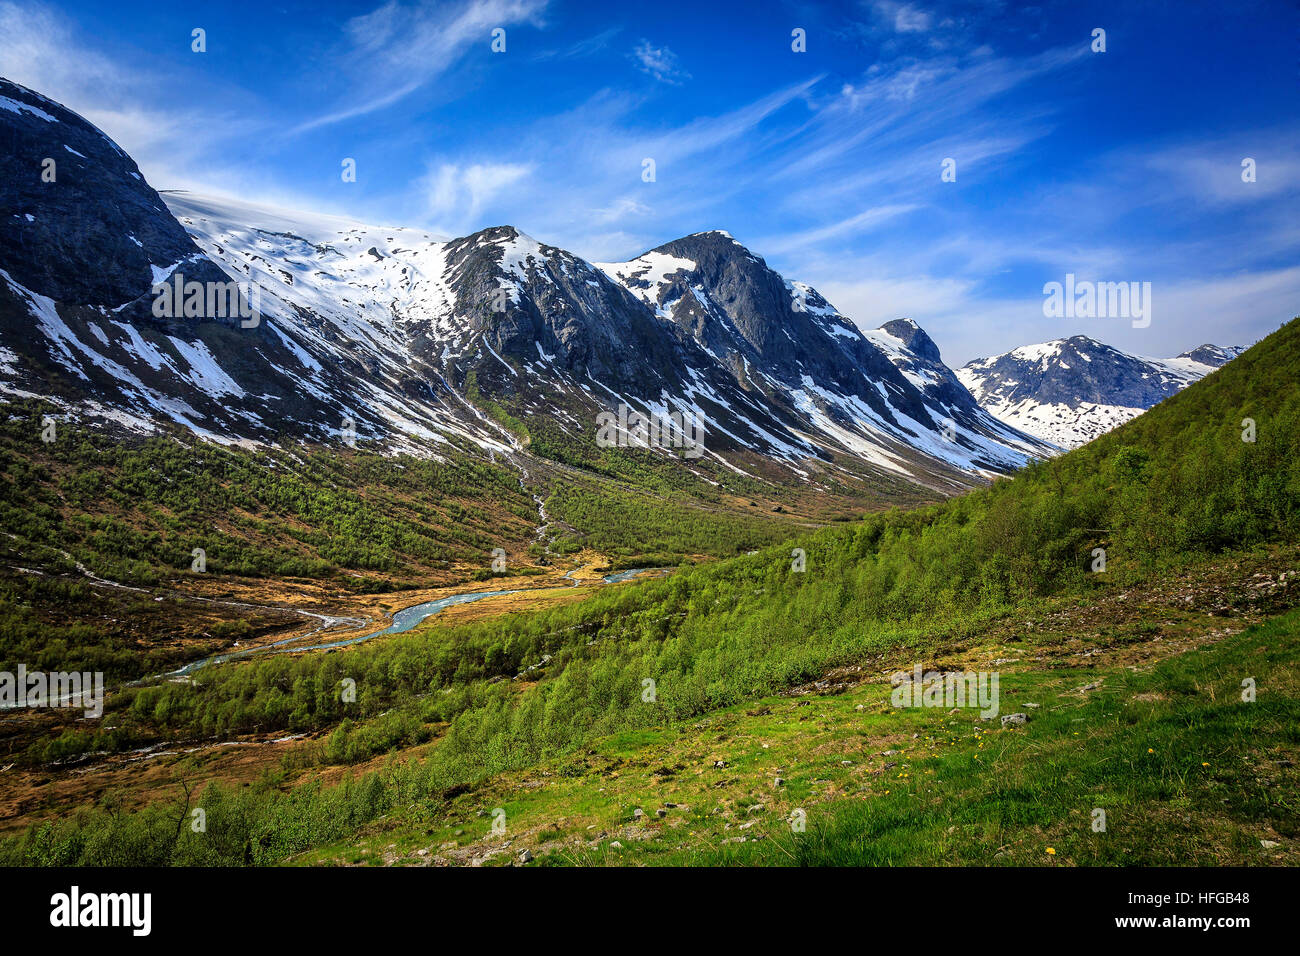 Guardando verso il basso un erosione glaciale valley. Foto scattata in primavera in Norvegia. Foto Stock